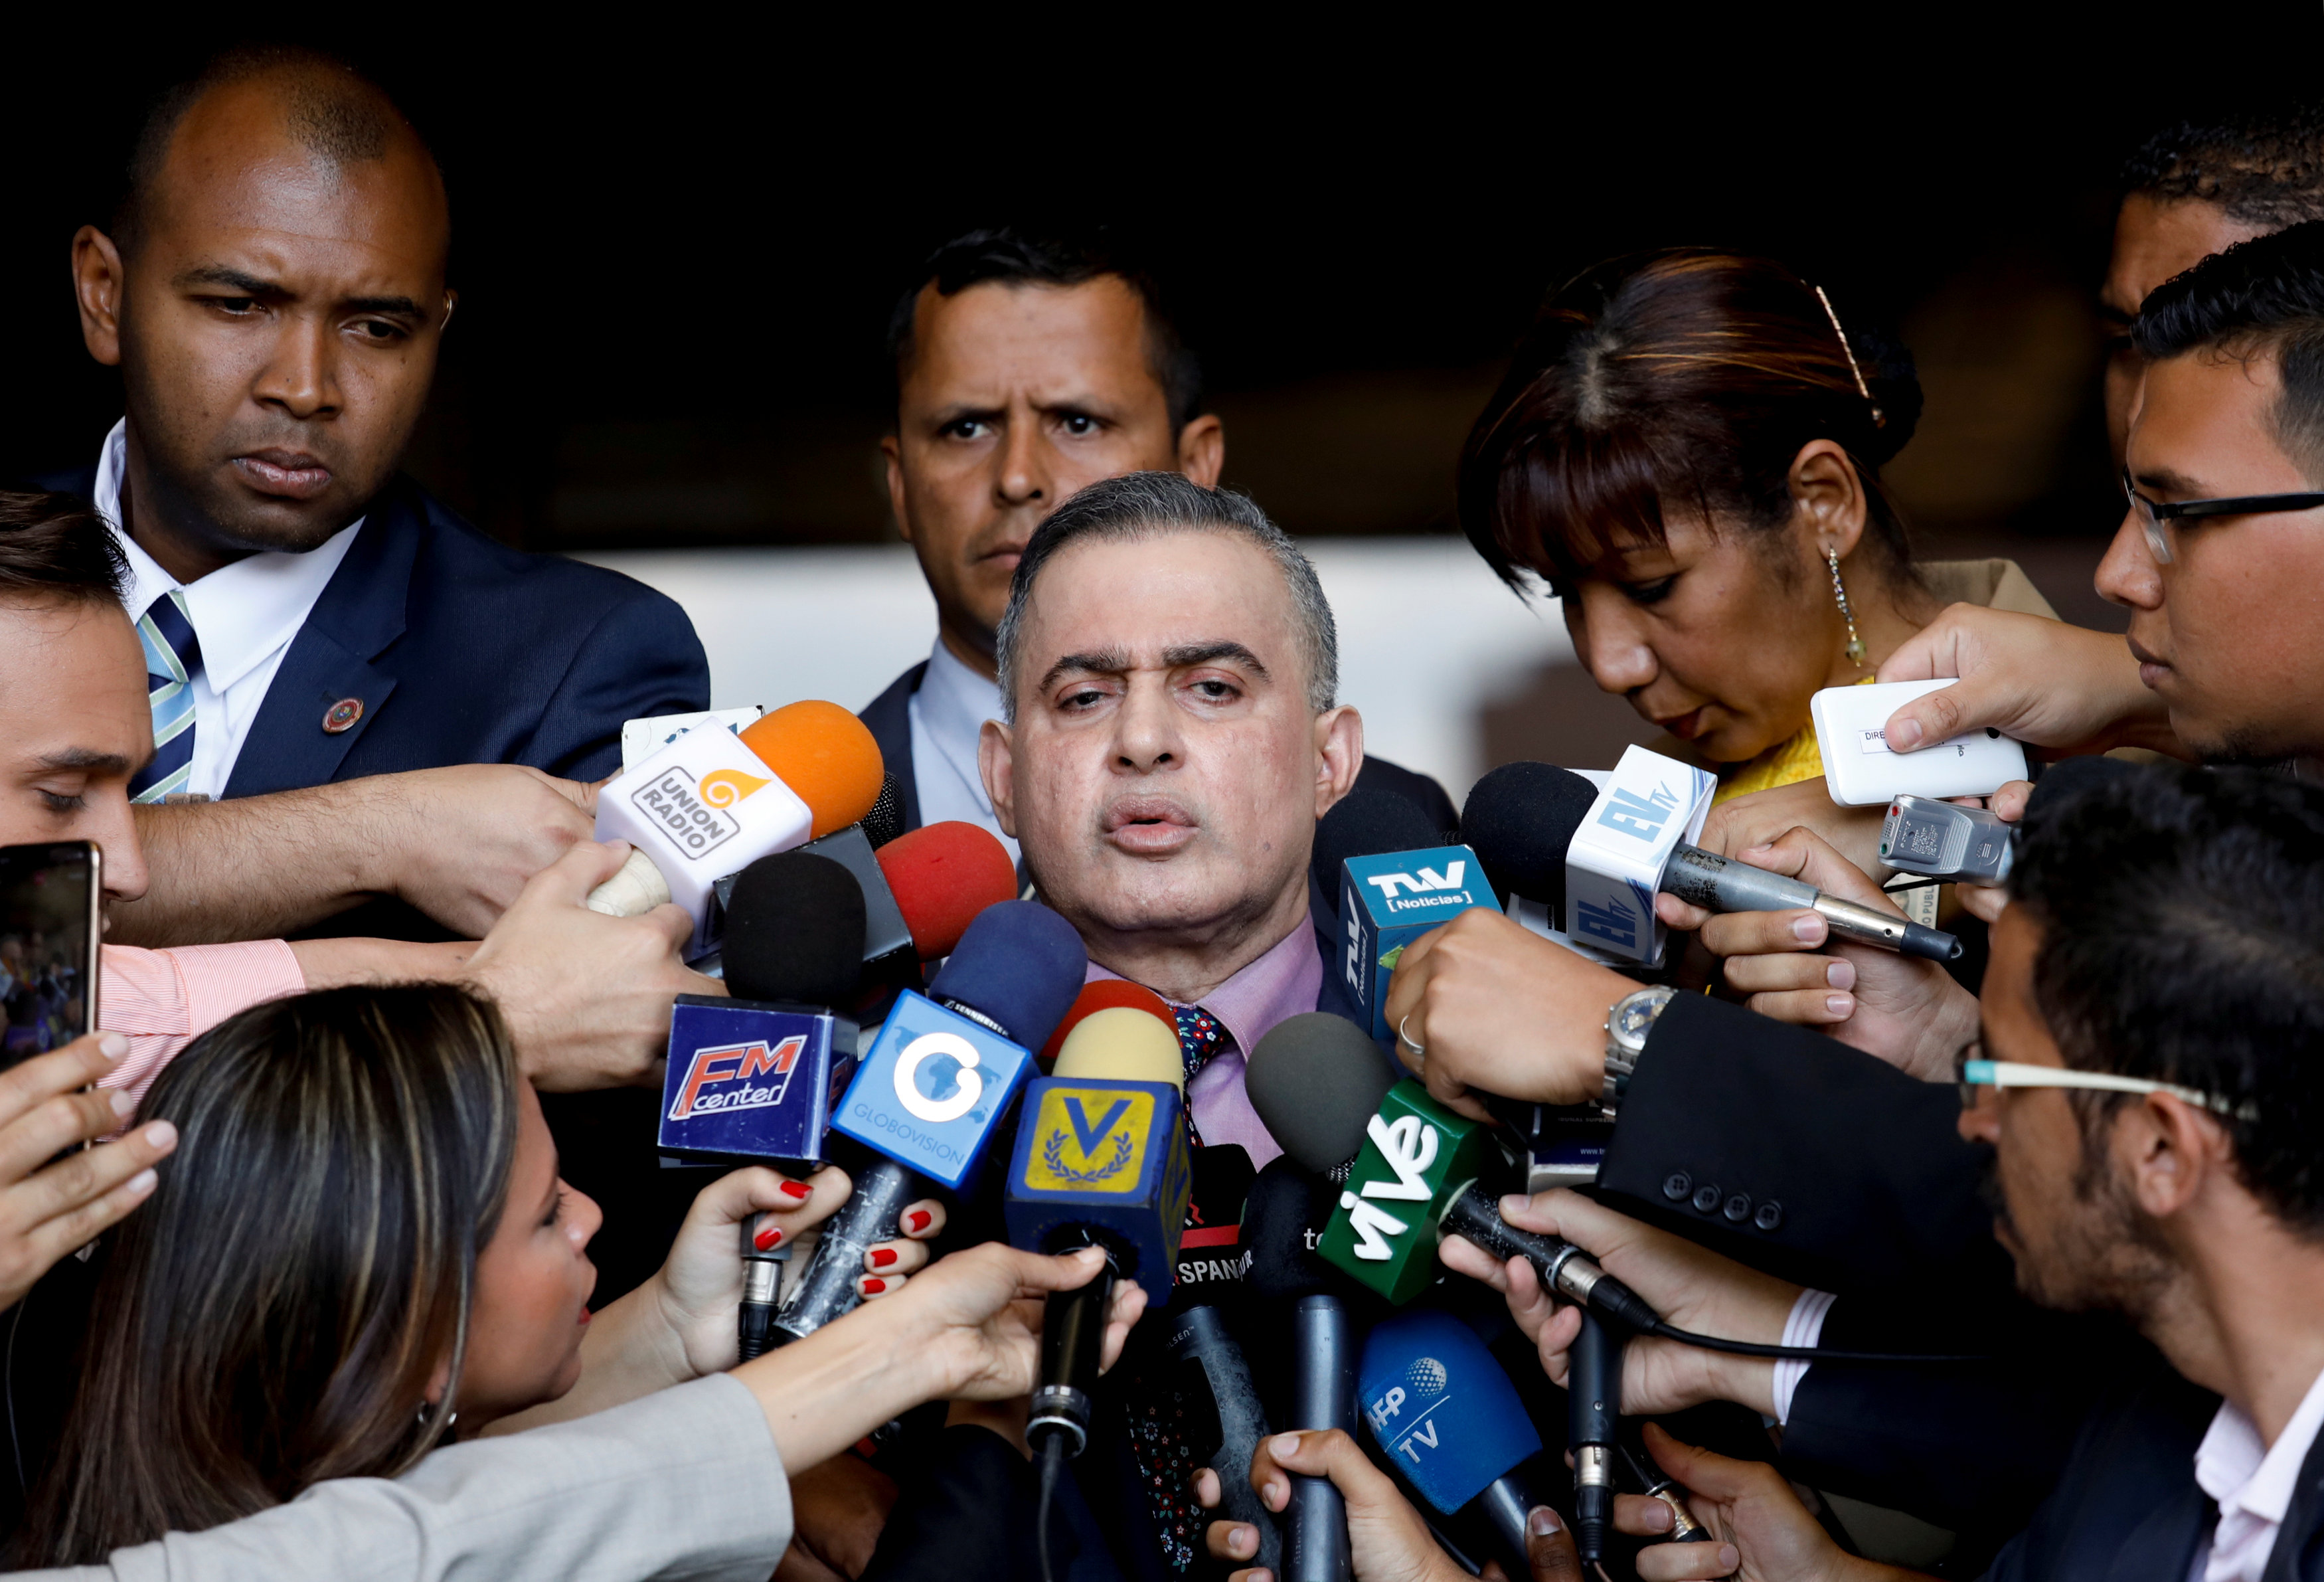 Saab anuncia apertura de investigación contra Guaidó y pide prohibición de salida del país (Video+Fotos)